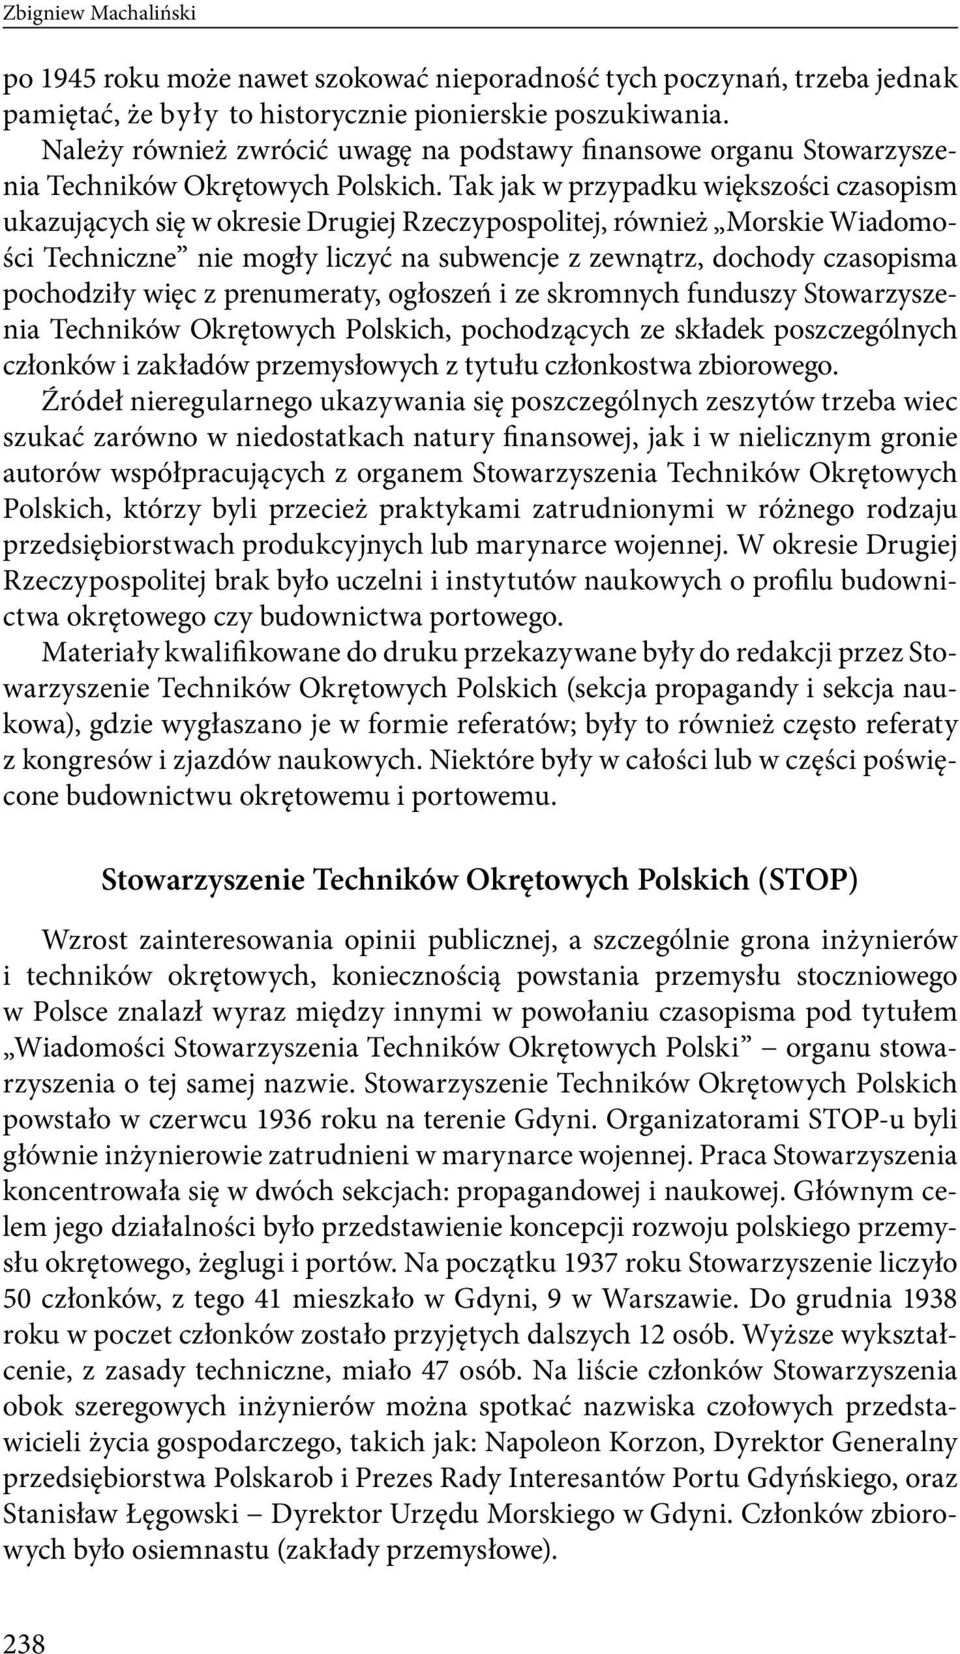 Tak jak w przypadku większości czasopism ukazujących się w okresie Drugiej Rzeczypospolitej, również Morskie Wiadomości Techniczne nie mogły liczyć na subwencje z zewnątrz, dochody czasopisma